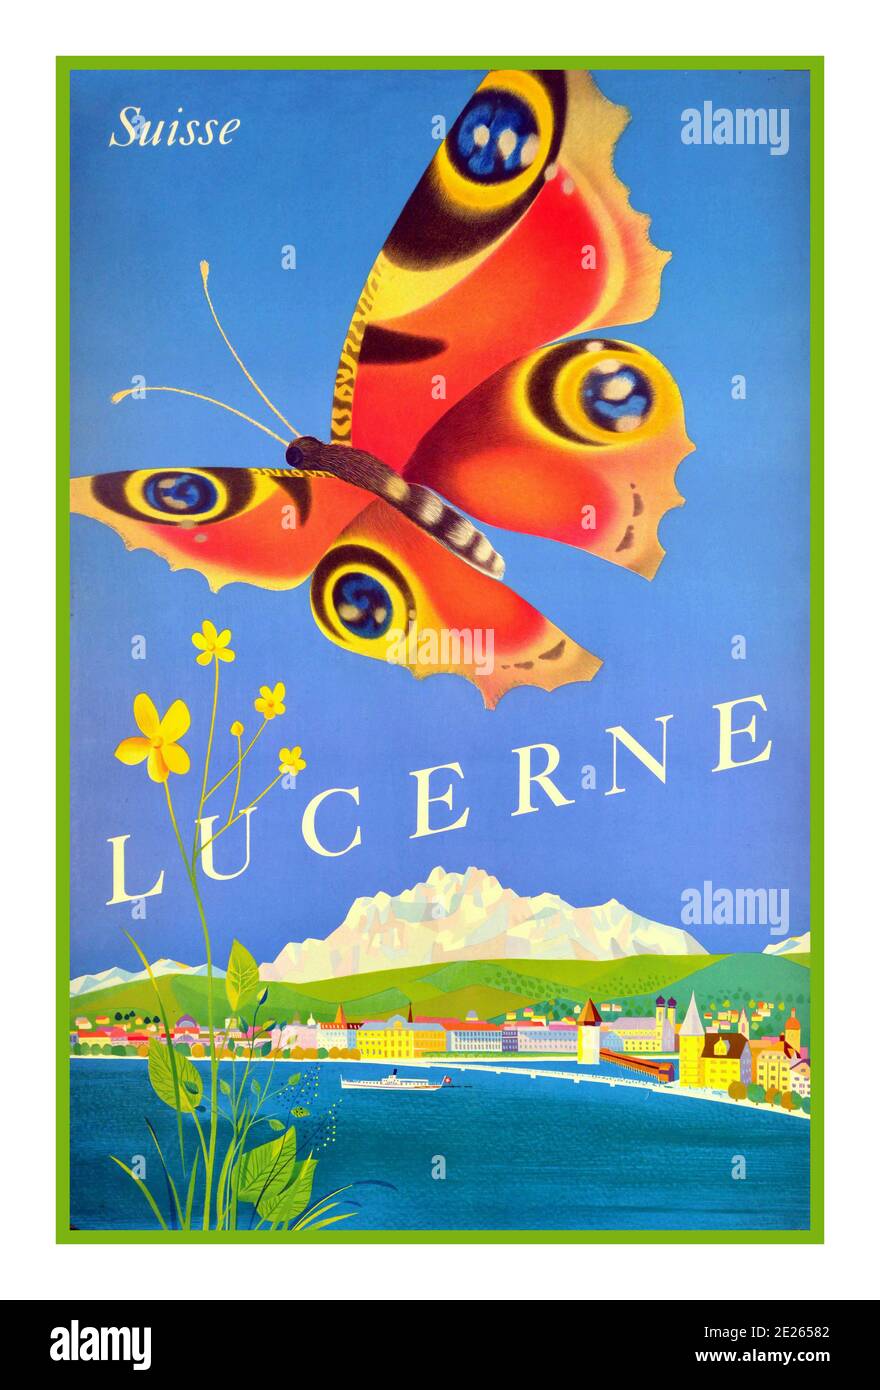 LUCERNE affiche de voyage vintage des années 1950 pour Lucerne Suisse avec un papillon dans le ciel et le lac et la ville en arrière-plan. Lucerne est une ville du centre de la Suisse, dans la partie germanophone du pays. Lucerne la capitale du canton de Lucerne. En raison de son emplacement sur les rives du lac de Lucerne (en allemand: Vierwaldstattersee) et de son écoulement, la rivière Reuss, à proximité des monts Pilatus et Rigi dans les Alpes suisses, Lucerne a longtemps été une destination pour les touristes.: Suisse designer: Schmidlin & Magoni 1956 Banque D'Images